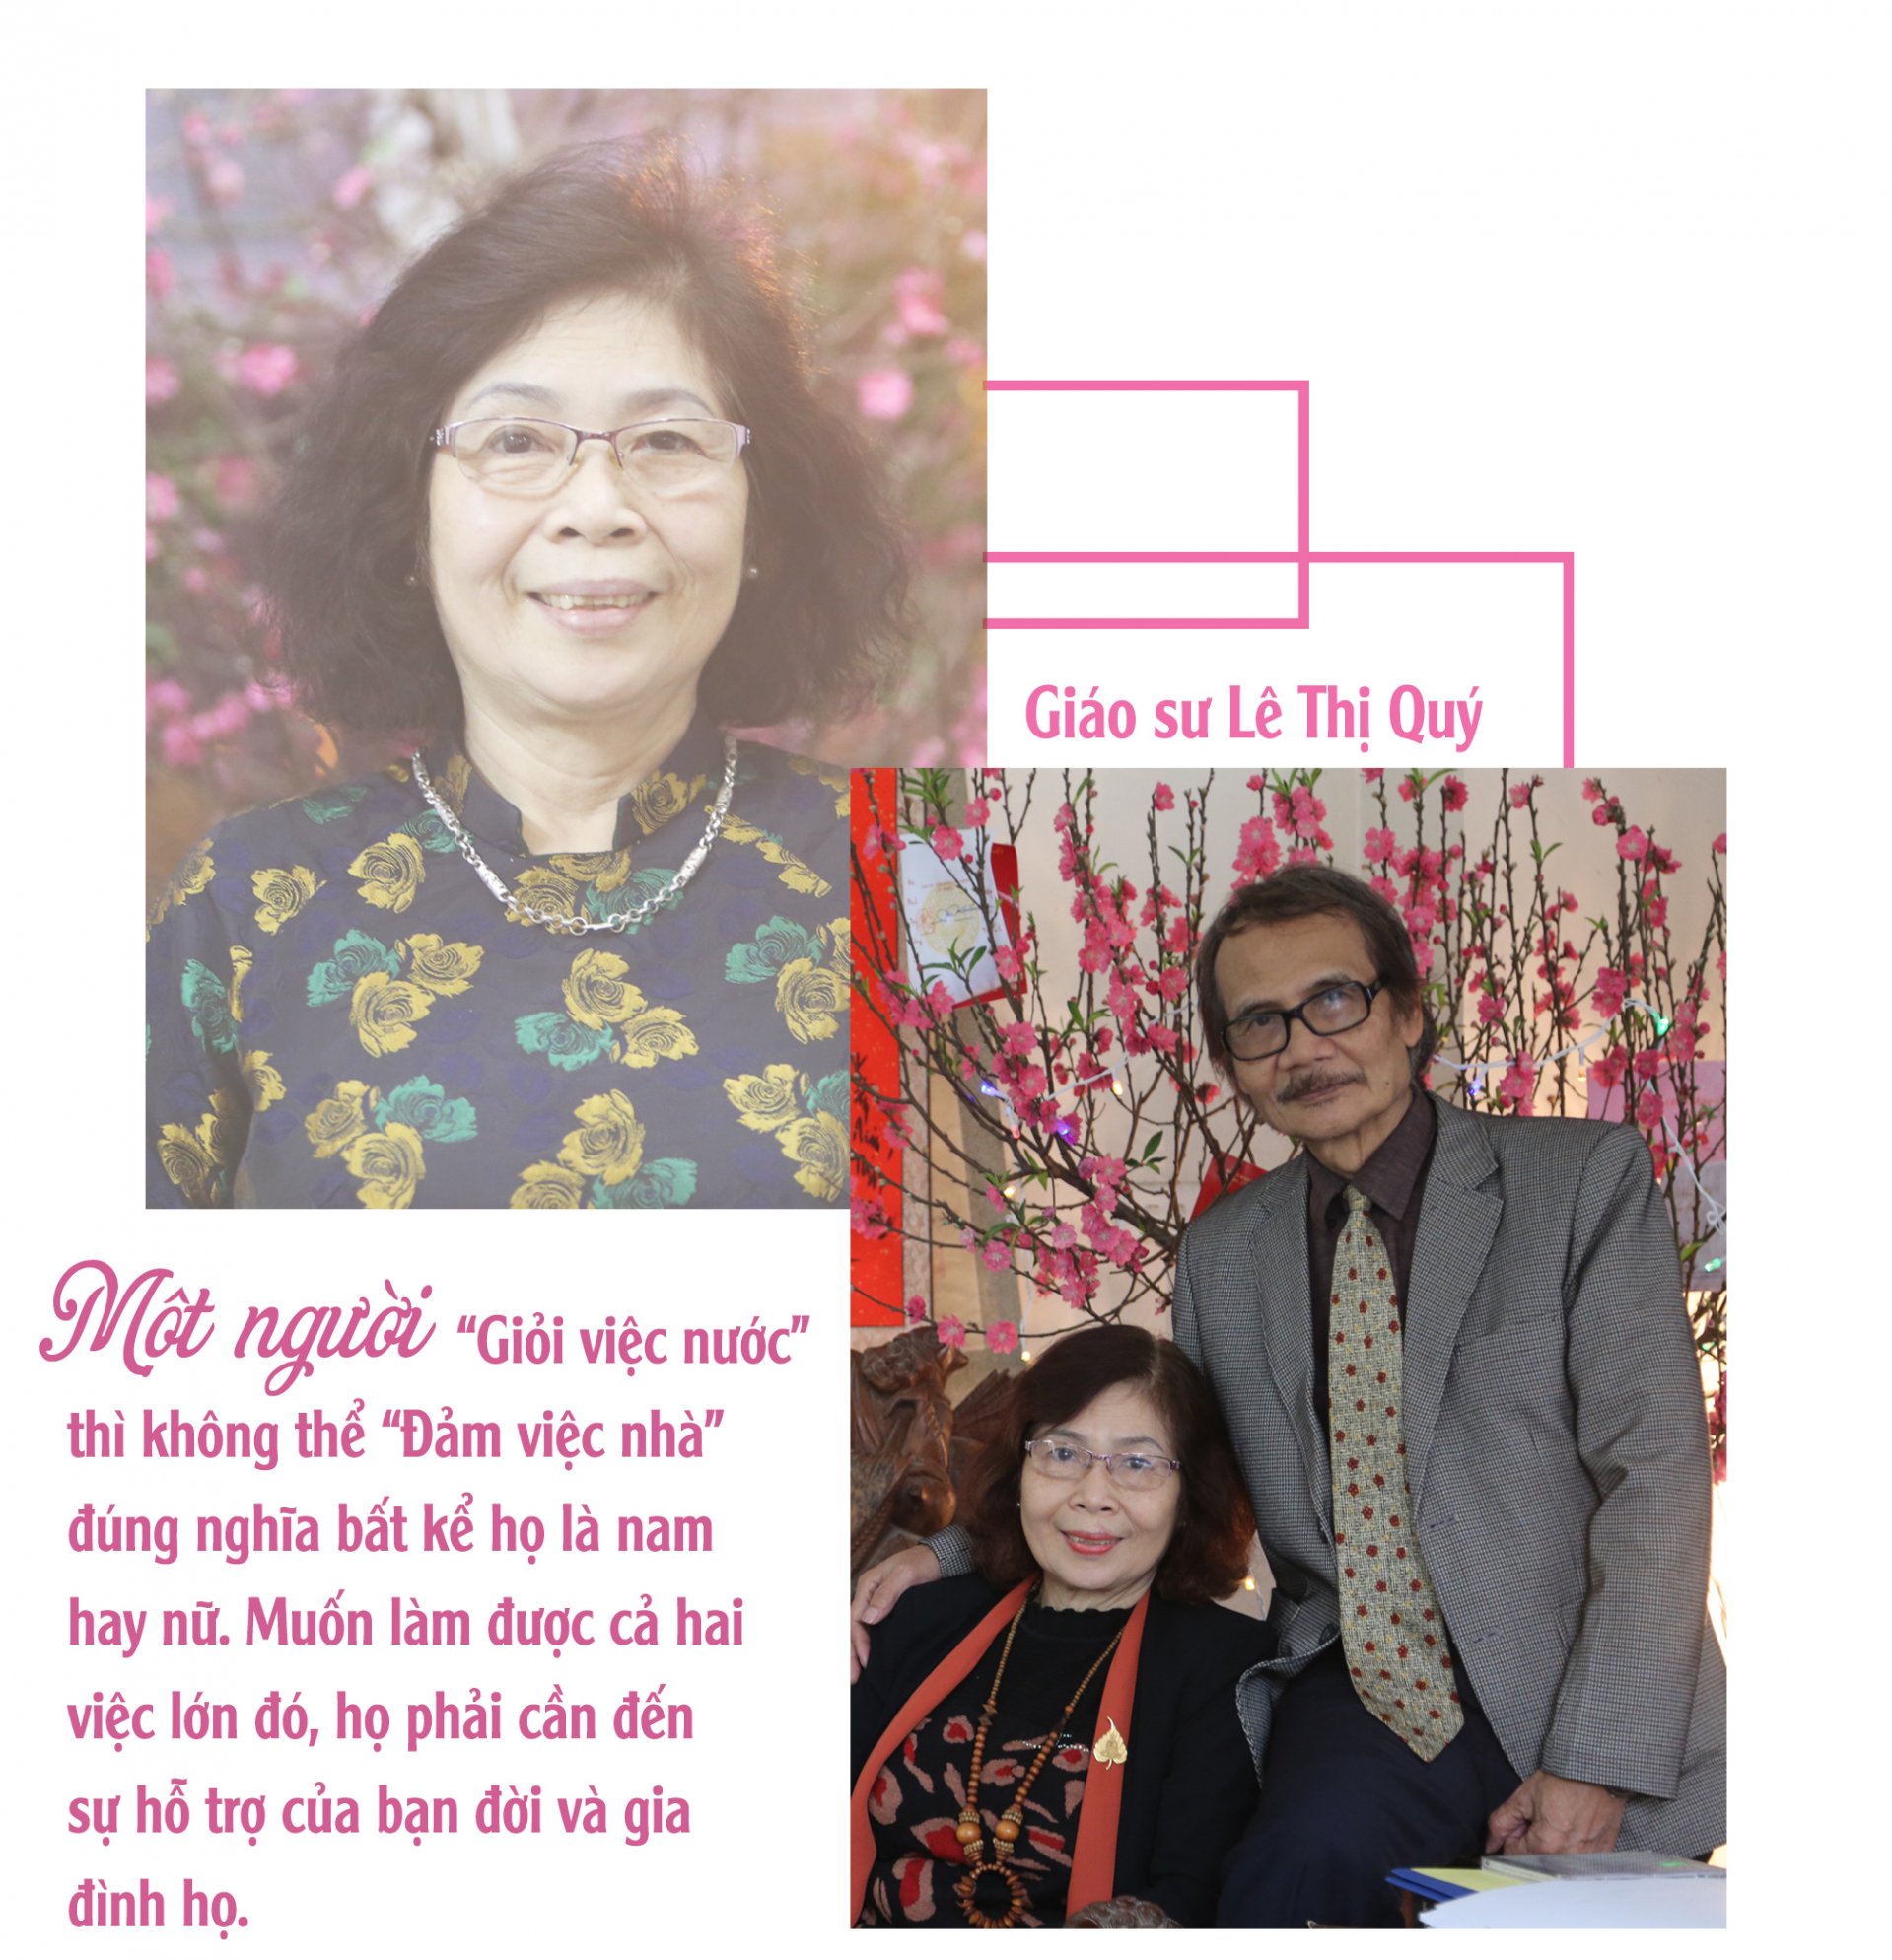 Giáo sư Lê Thị Quý: 'Khi nào ngày 8/3 chỉ còn là kỷ niệm thì phụ nữ sẽ hạnh phúc' 2